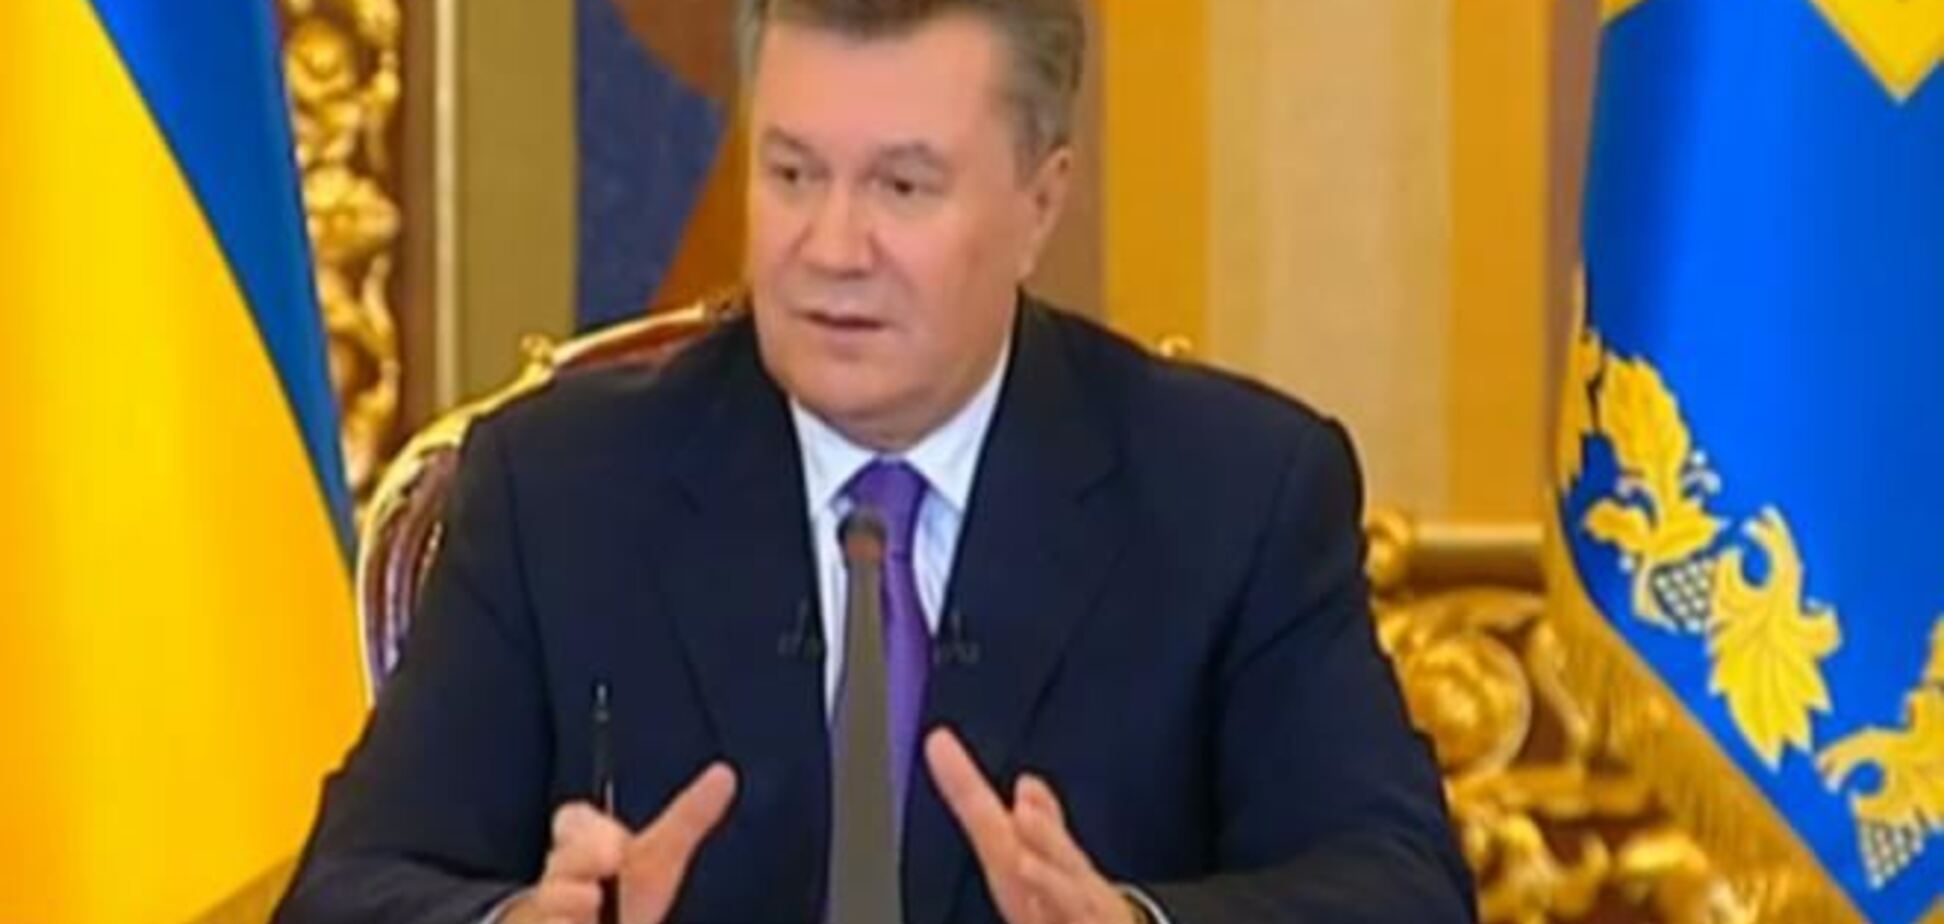 Эксперт: Янукович по сравнению с Путиным будет выглядеть хуже